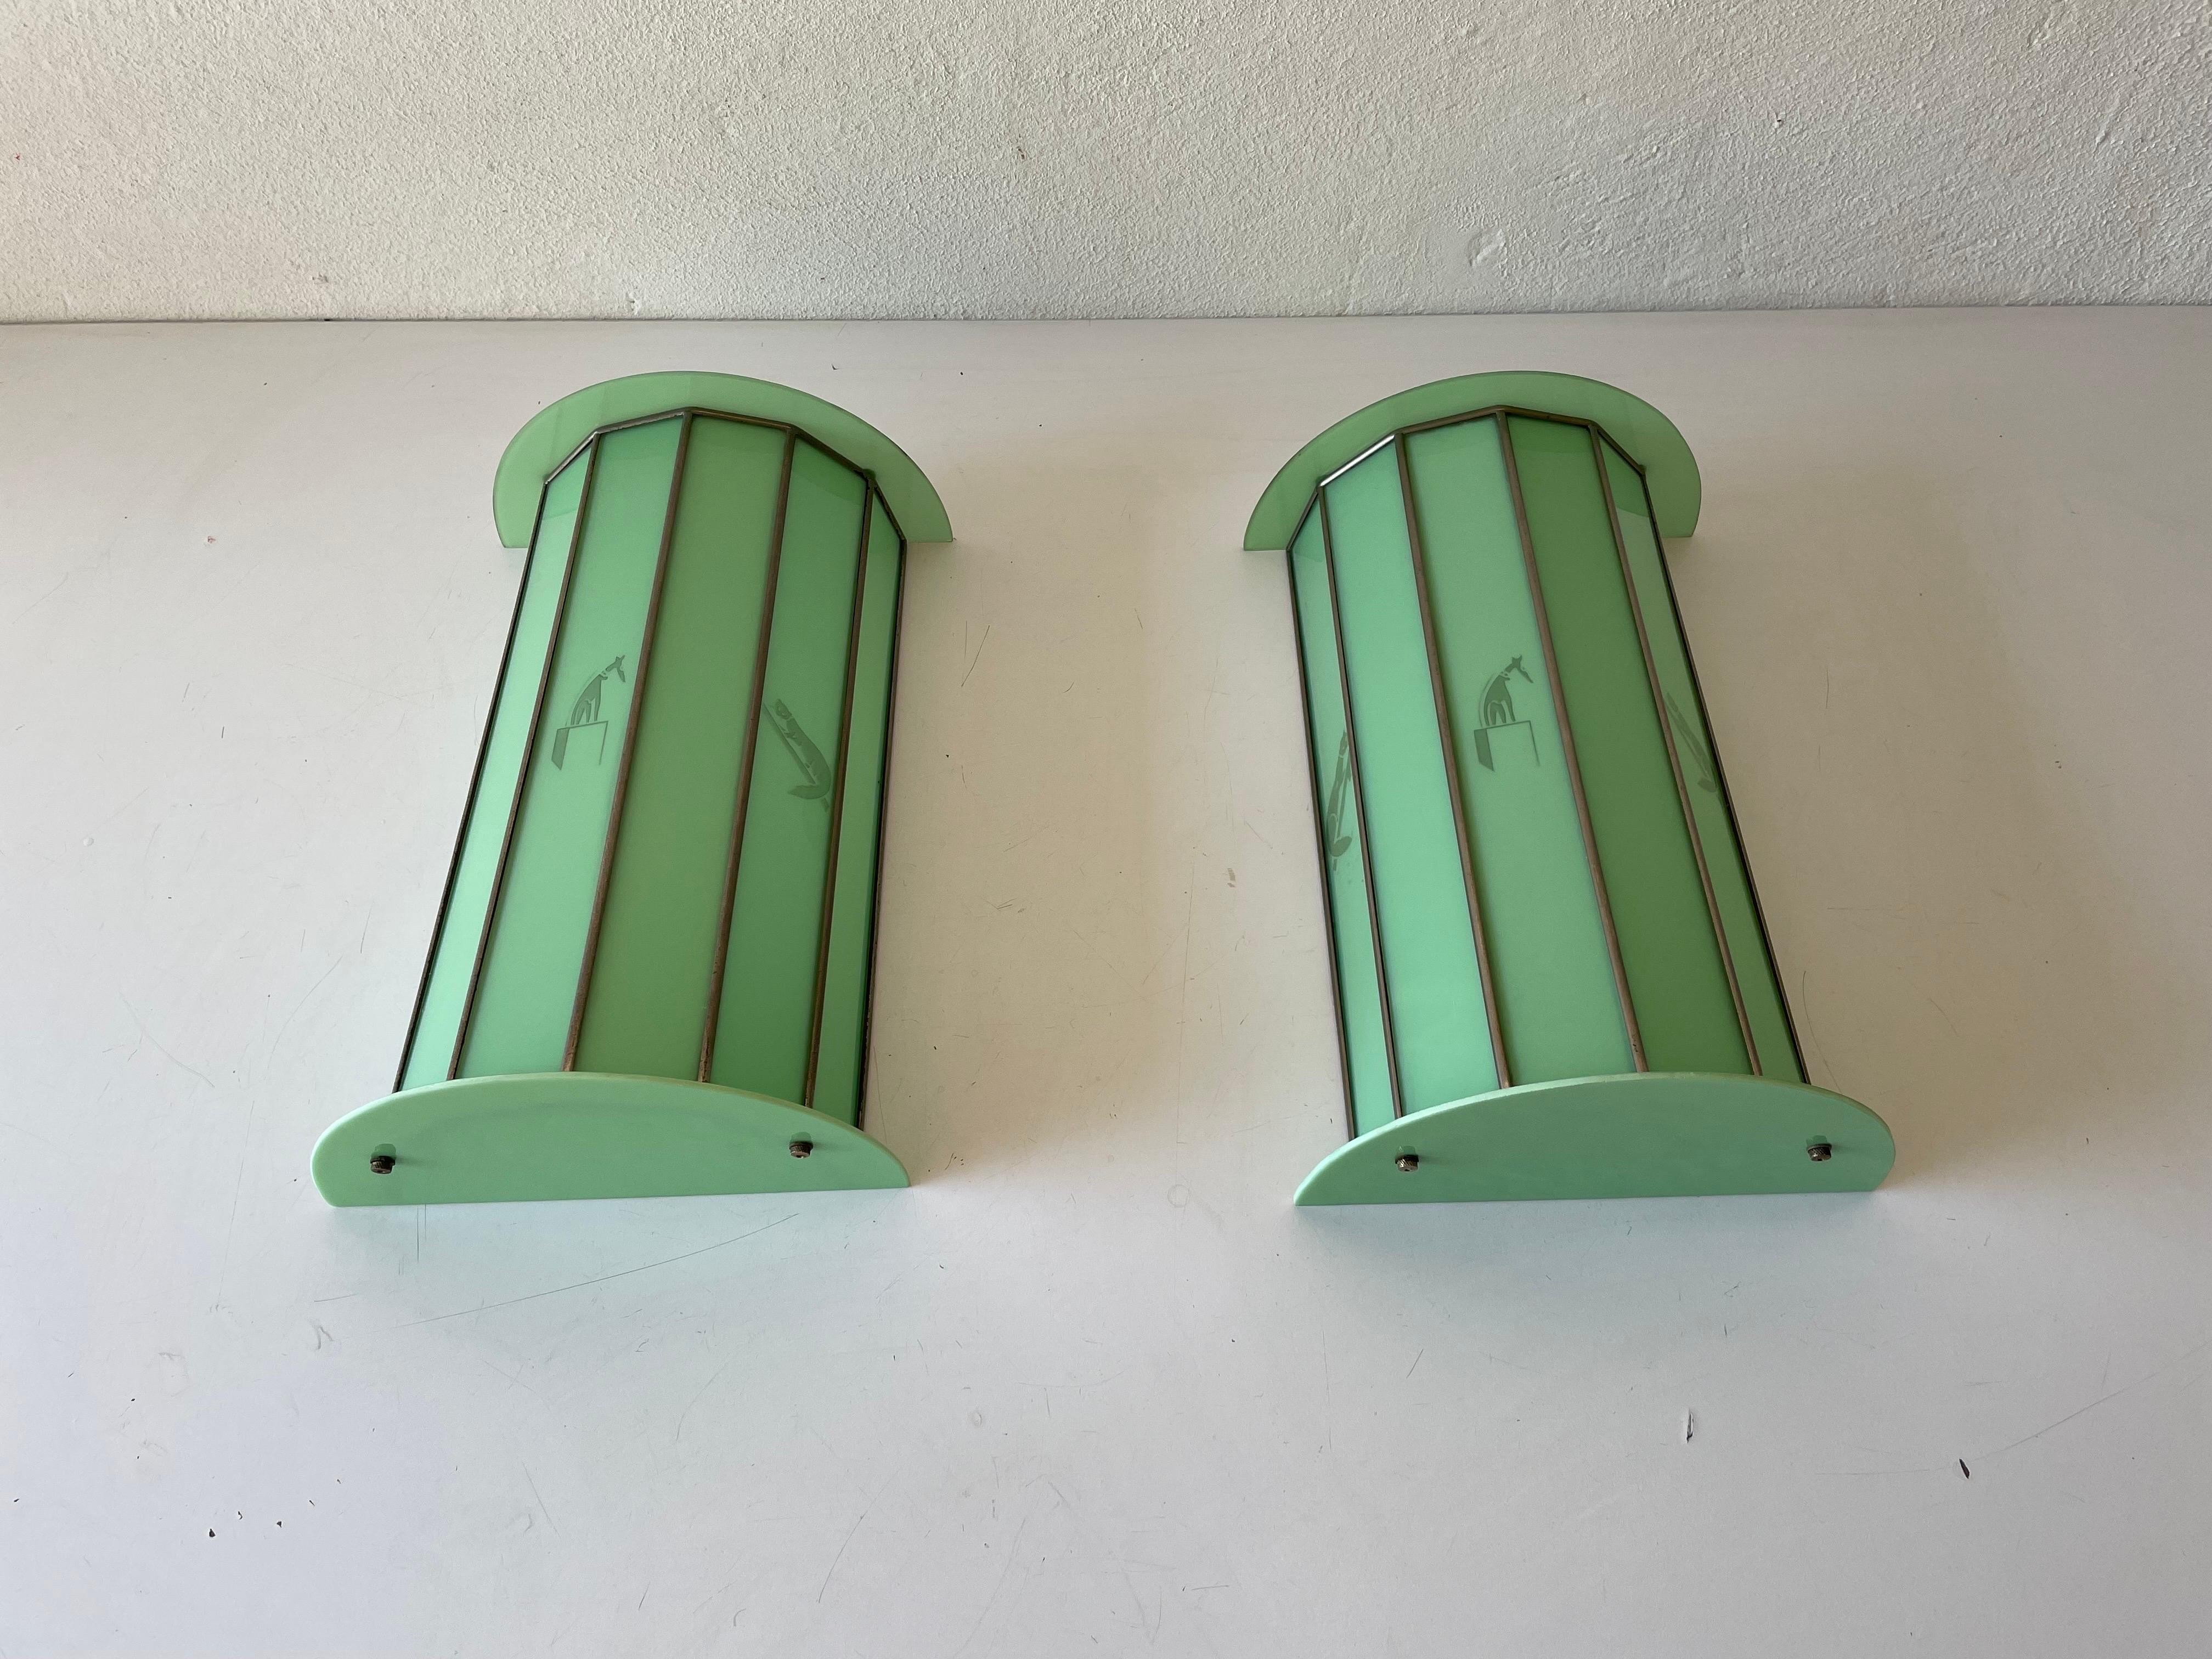 Einzigartiges Paar Wandleuchter aus grünem Glas mit Katzen- und Hundemotiven, 1950er Jahre, Italien

Sehr elegante und minimalistische Wandlampen
Die Lampe ist in sehr gutem Zustand.

Diese Lampen funktionieren mit E27 Standard-Glühbirnen.